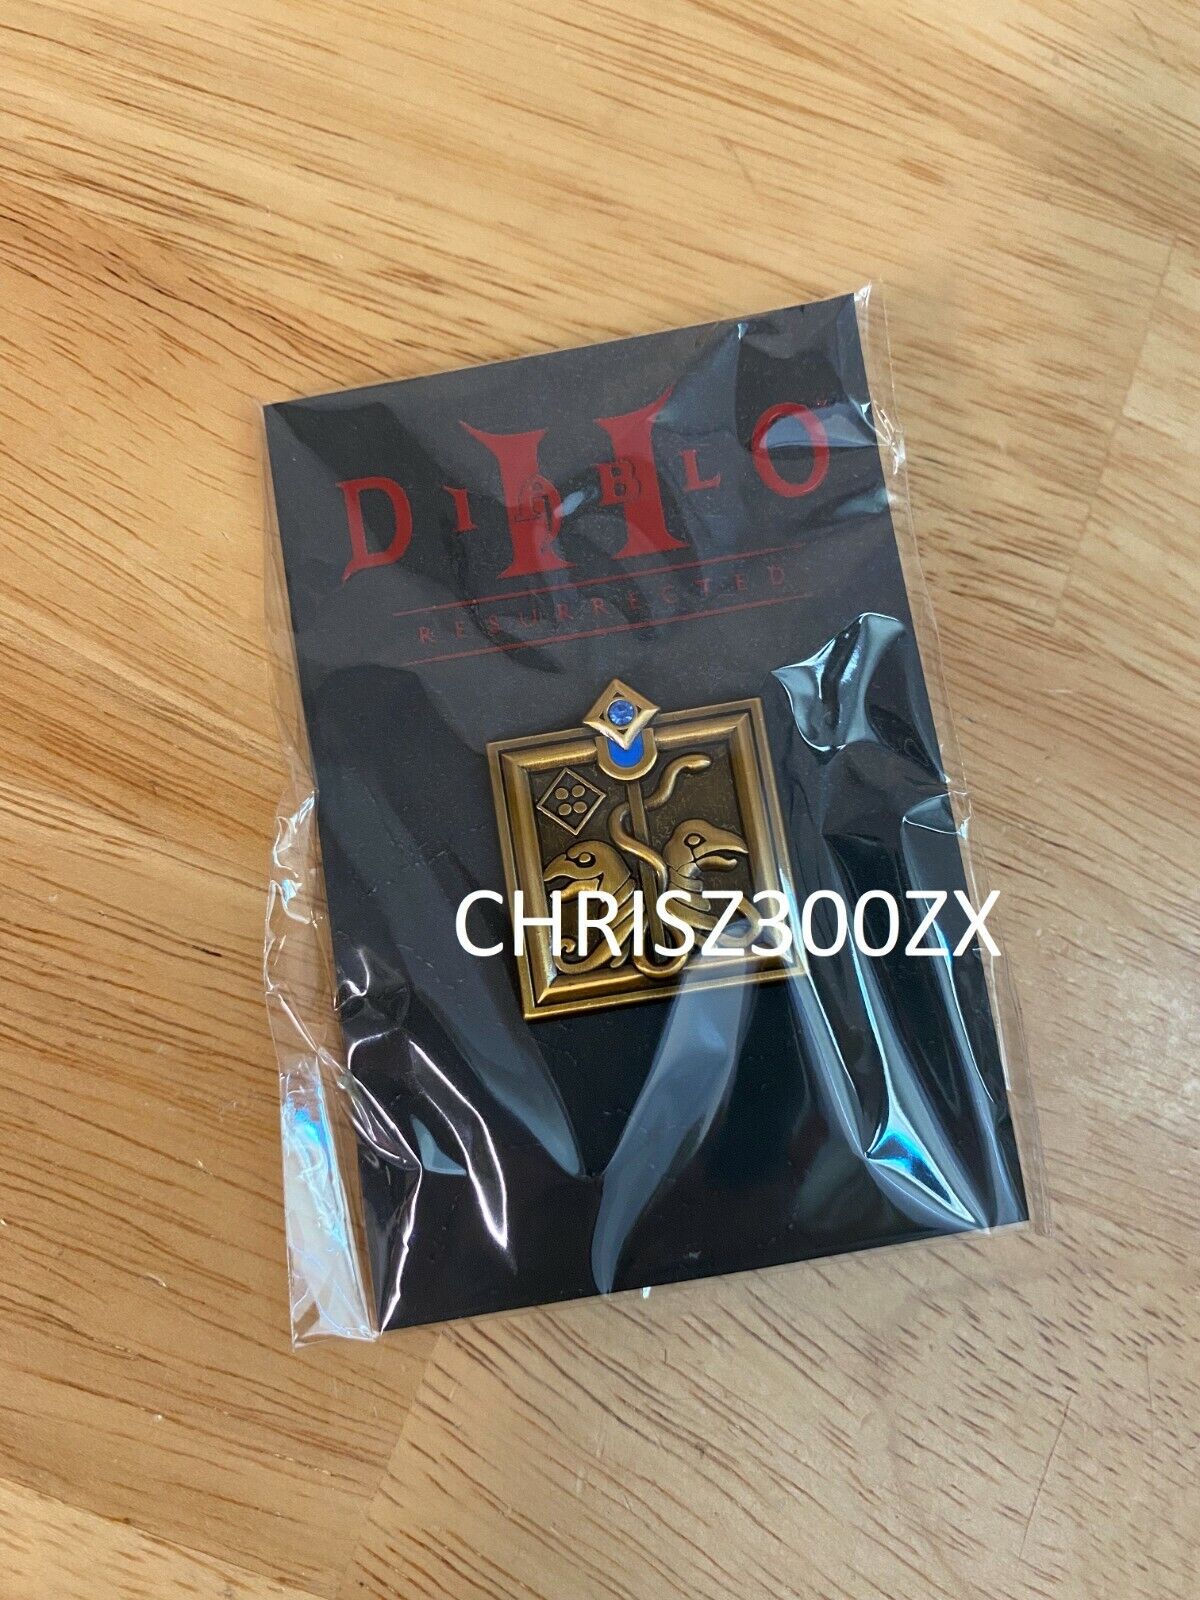 Diablo II 2 Resurrected Deluxe Vinyl Record Soundtrack Horadric Staff Figure Pin